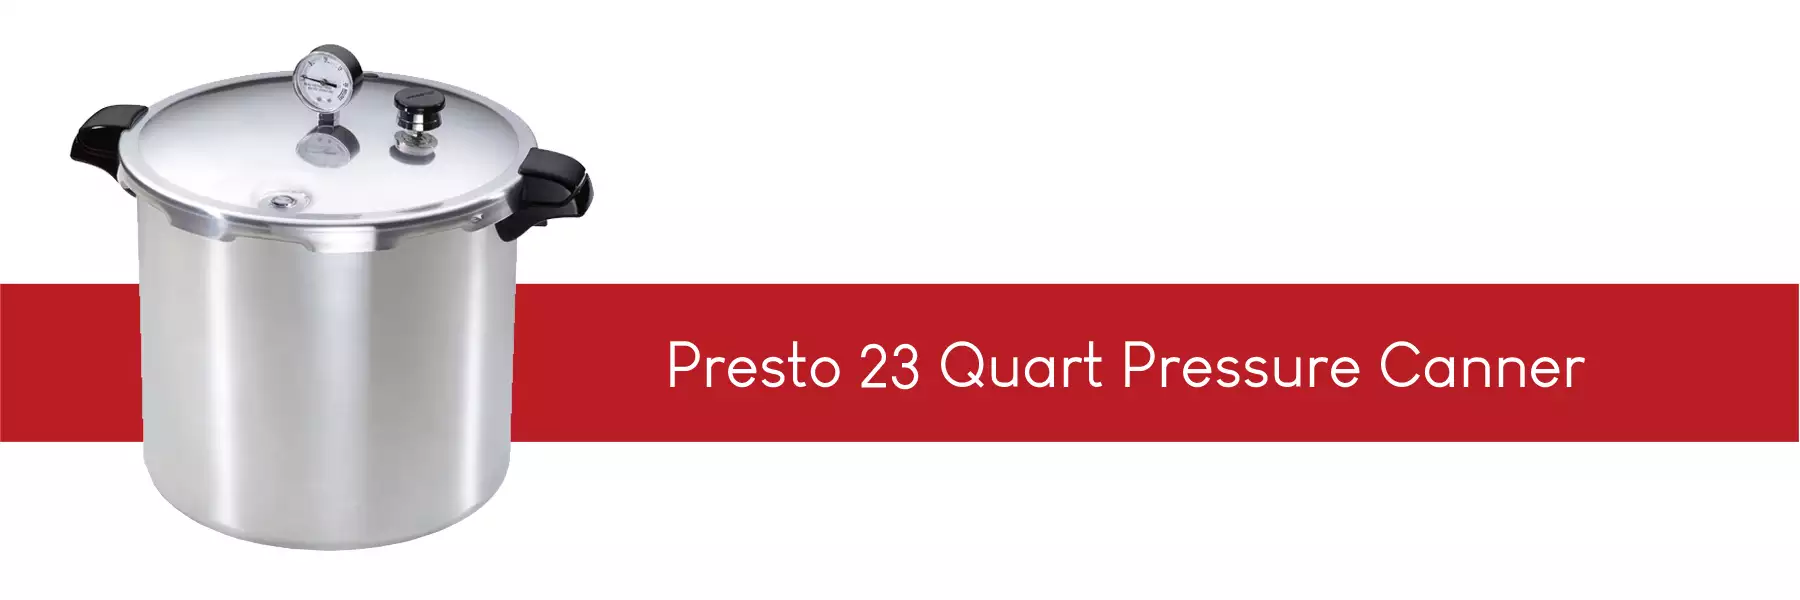 Presto 23 quart pressure canner 01781 01784  stocked in the uk by lovejars.co.uk